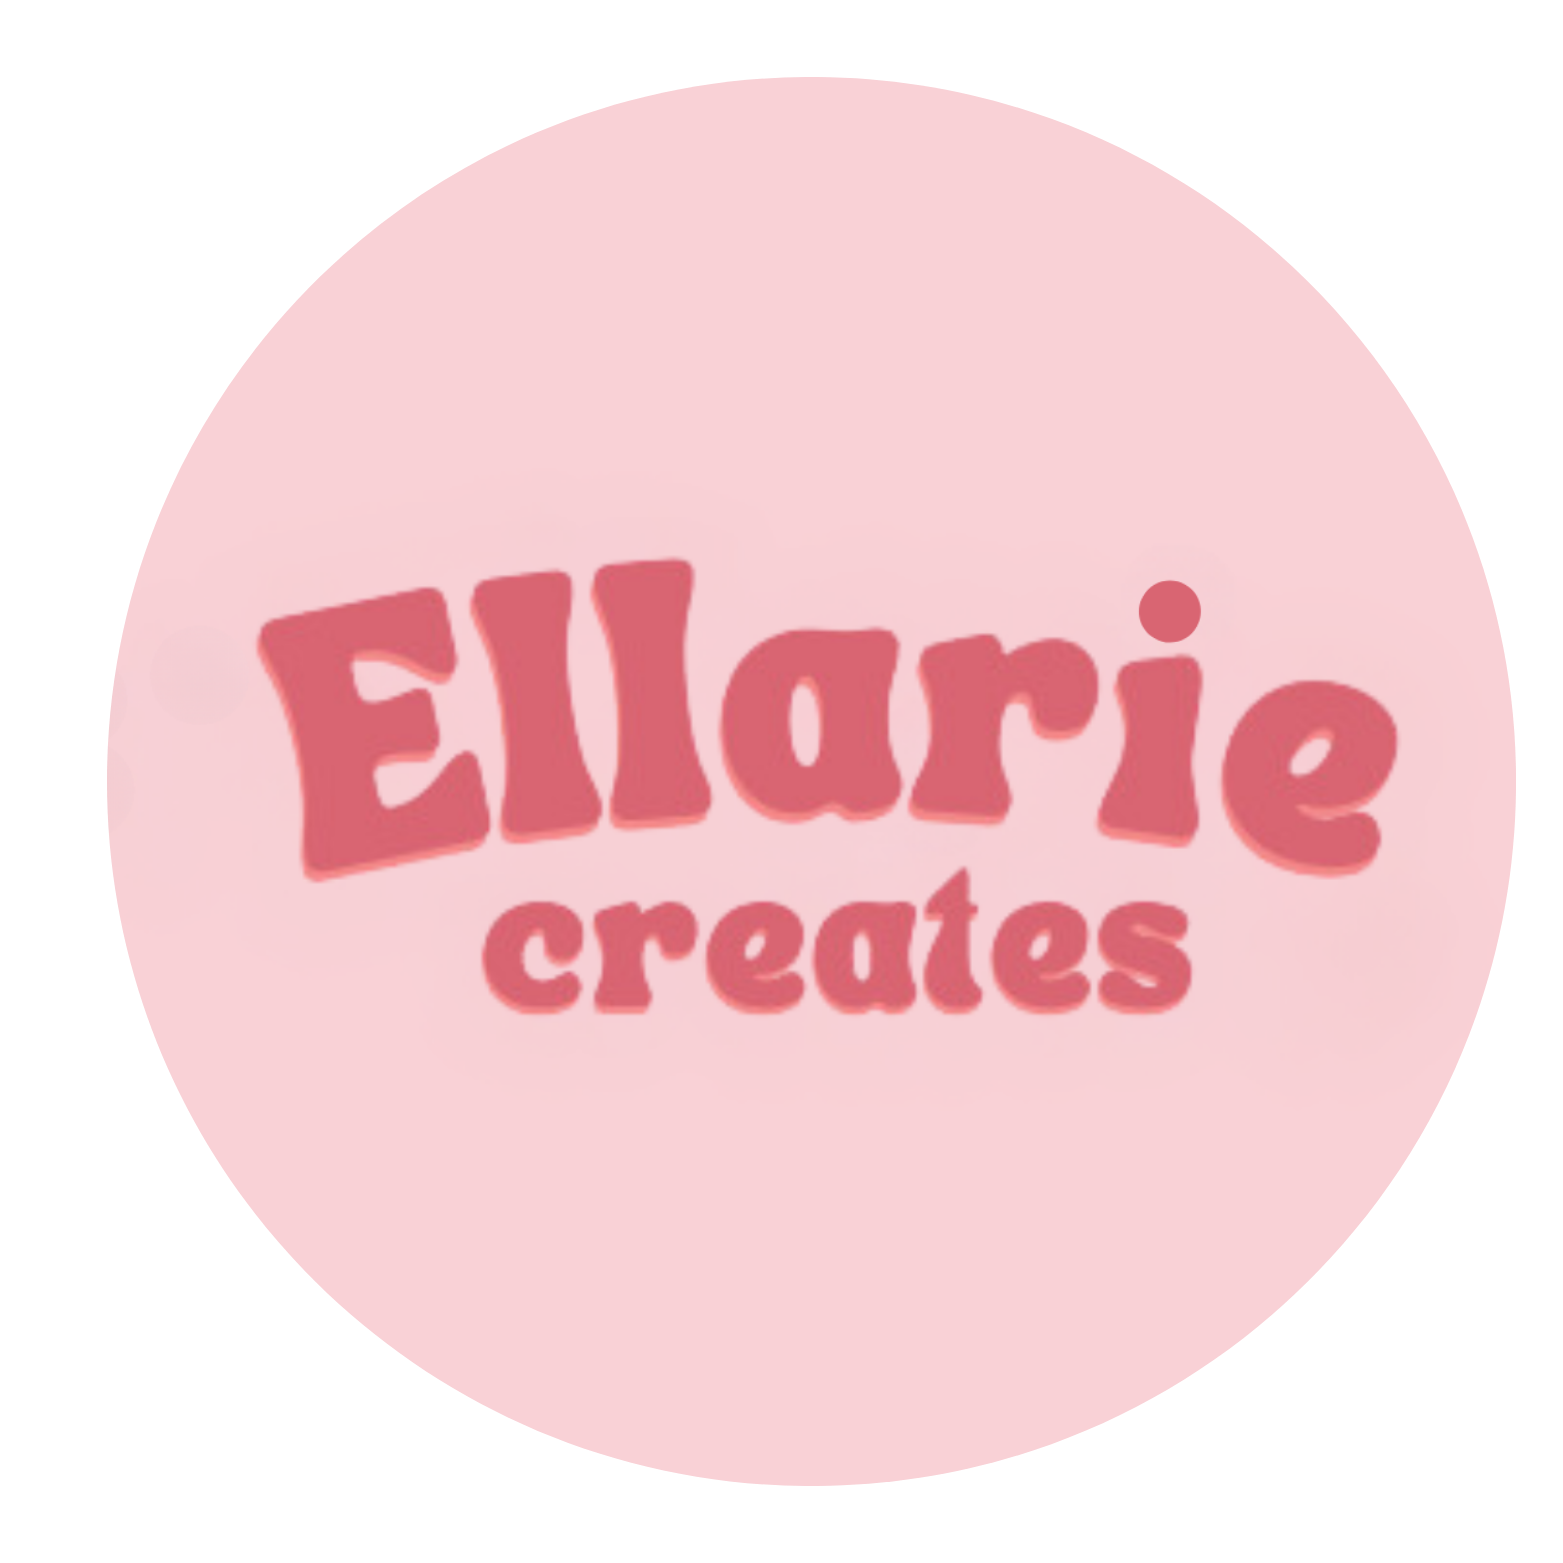 Ellarie Creates